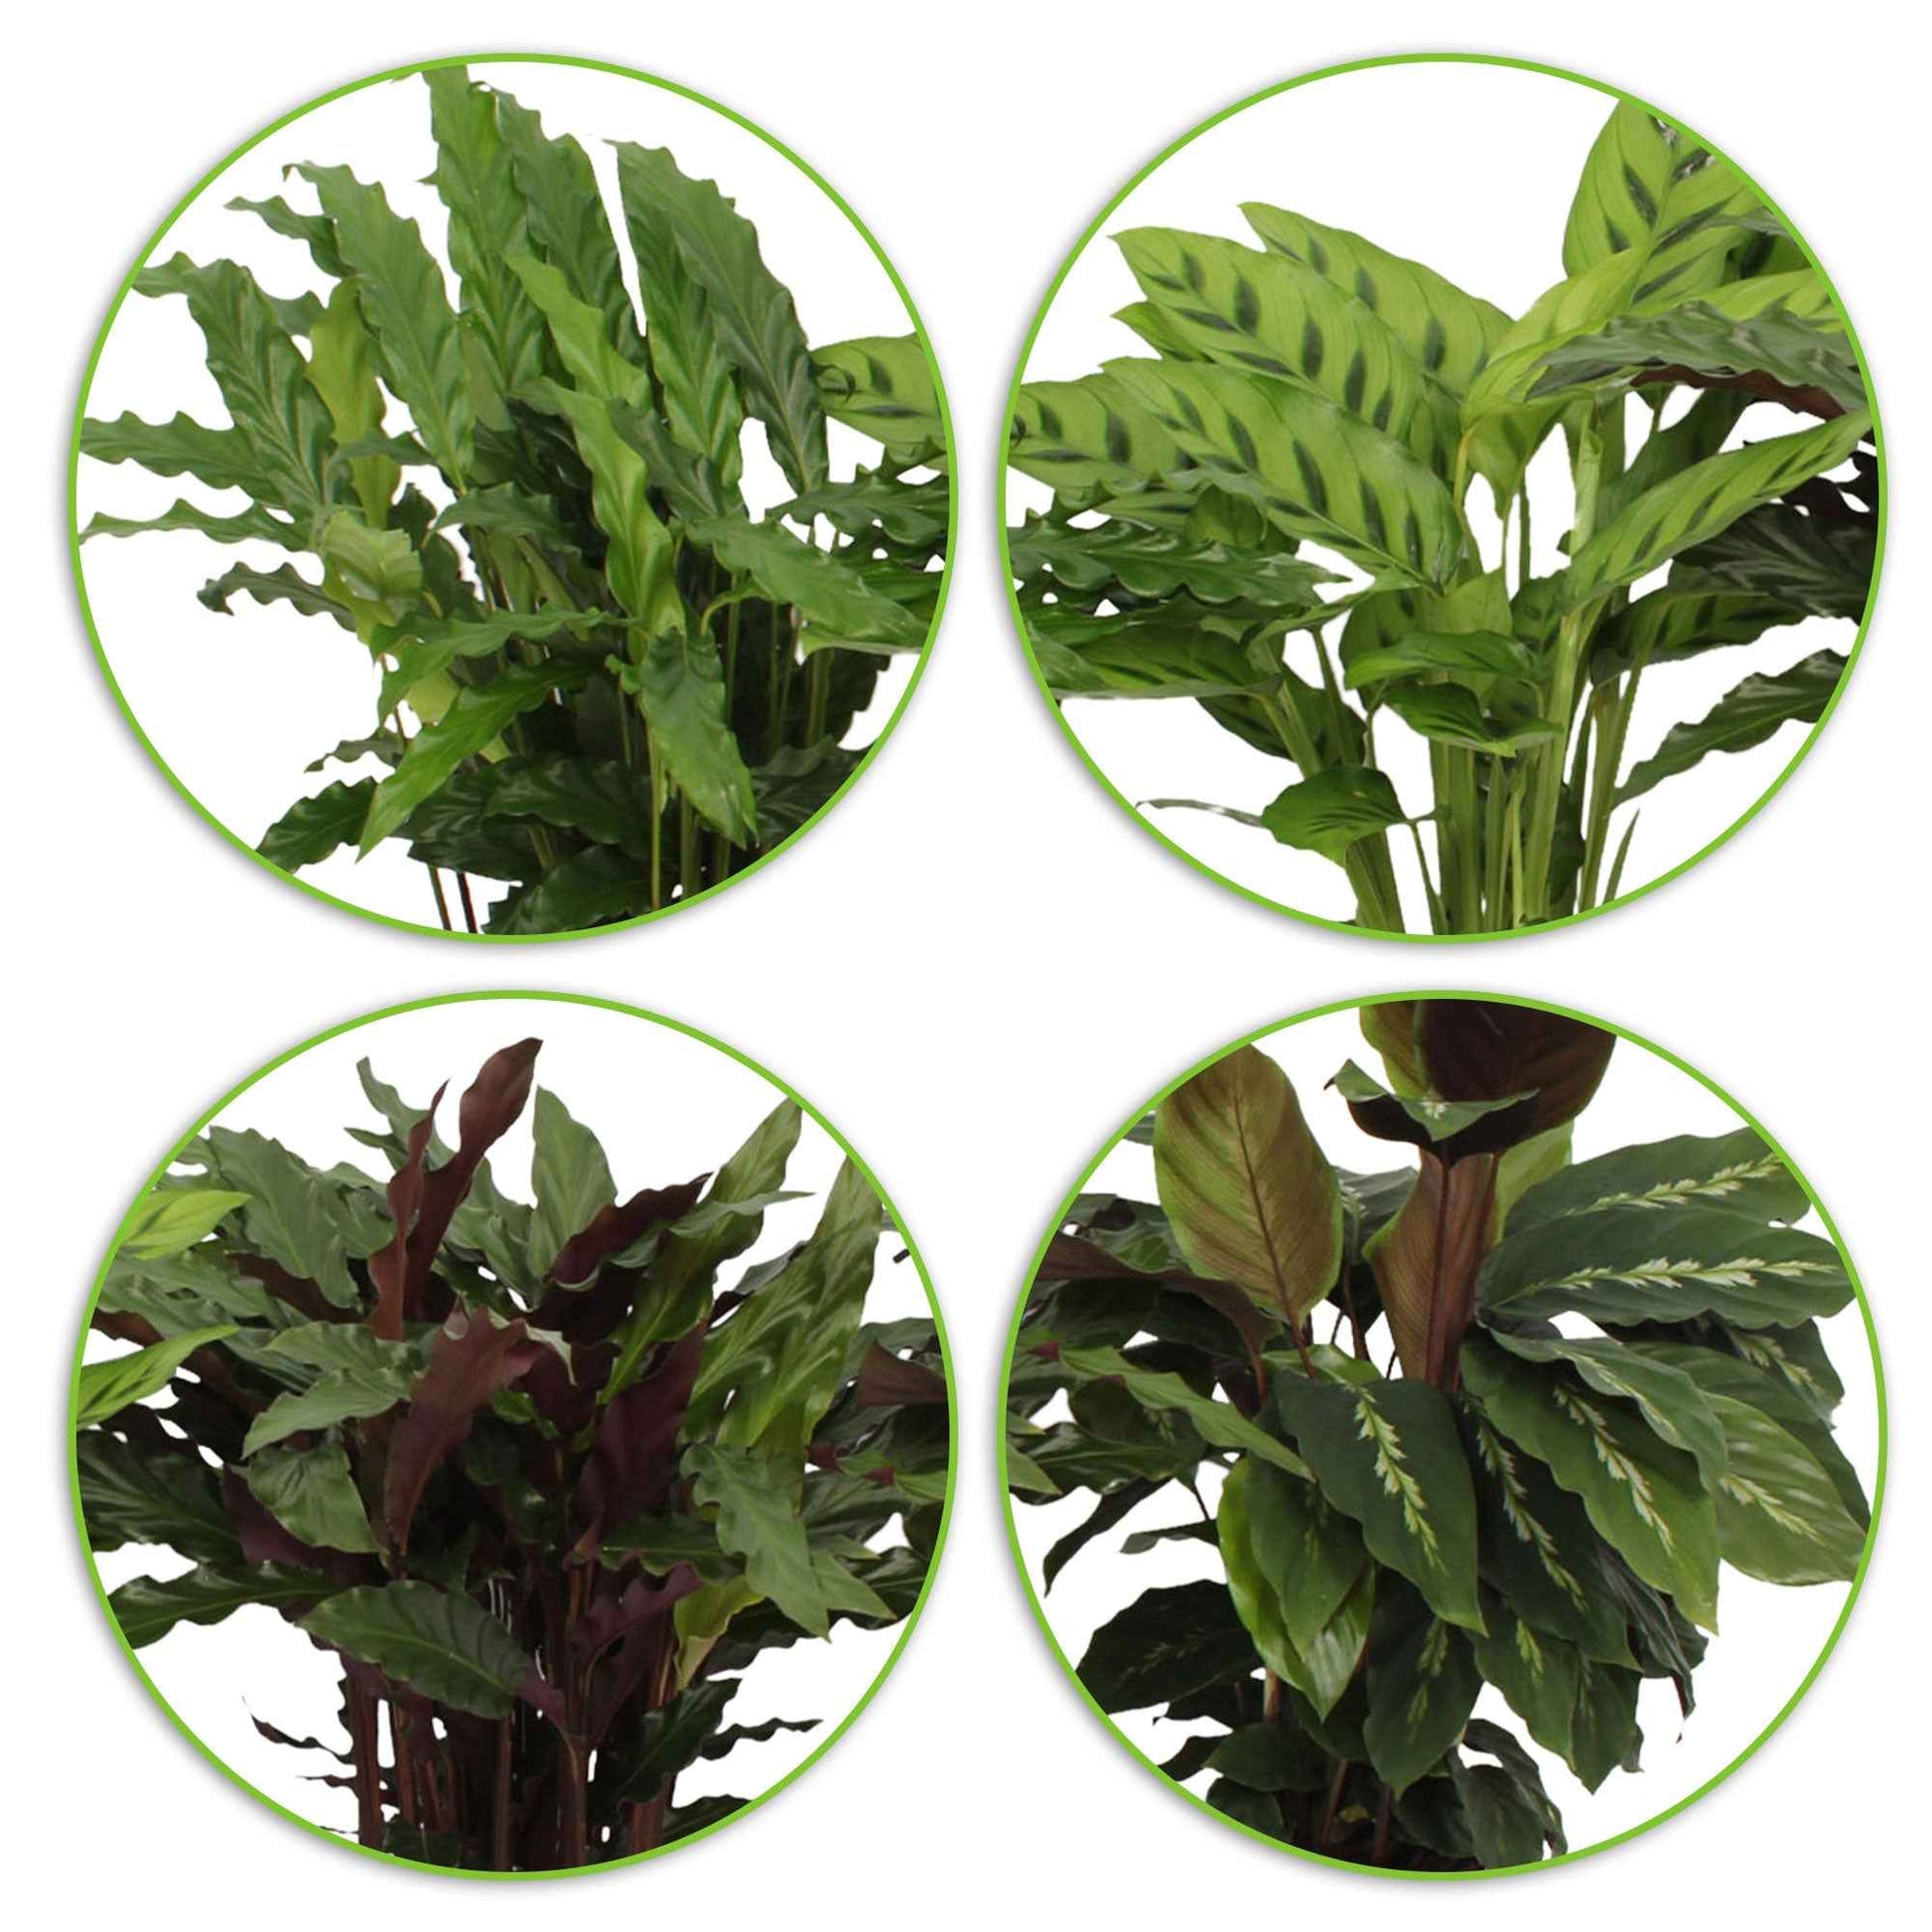 4x Calathea, Ctenanthe - Mischung Luftreinigende Pflanzen inkl. Dekotopf - Beliebte Zimmerpflanzen